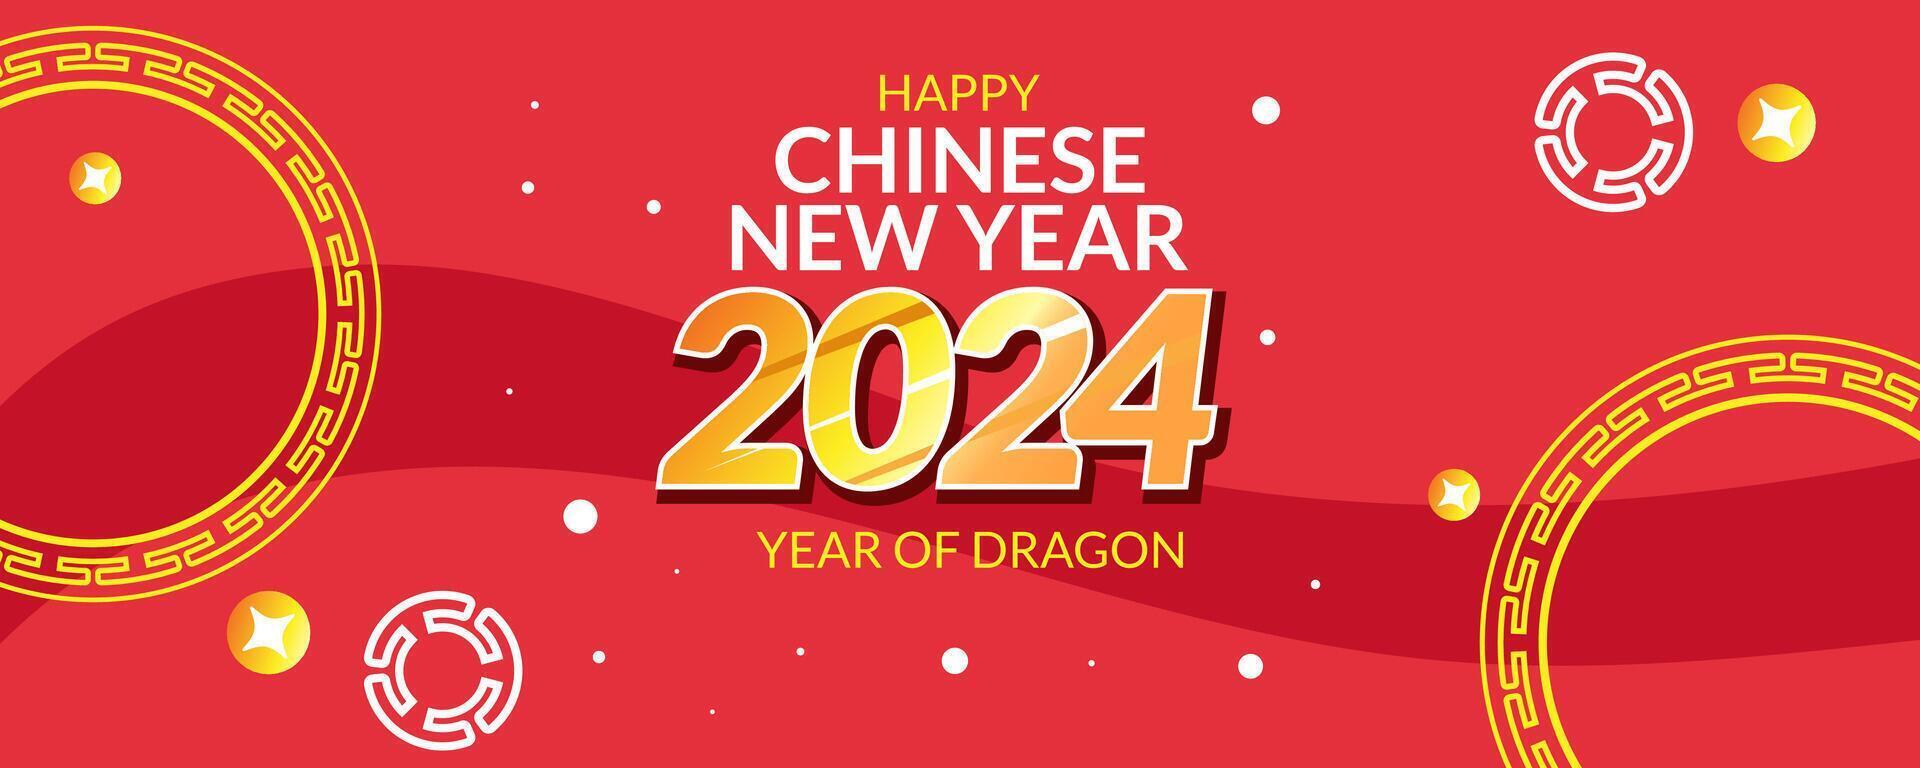 rood banier gelukkig Chinese nieuw jaar 2024 jaar van draak vector illustratie achtergrond poster